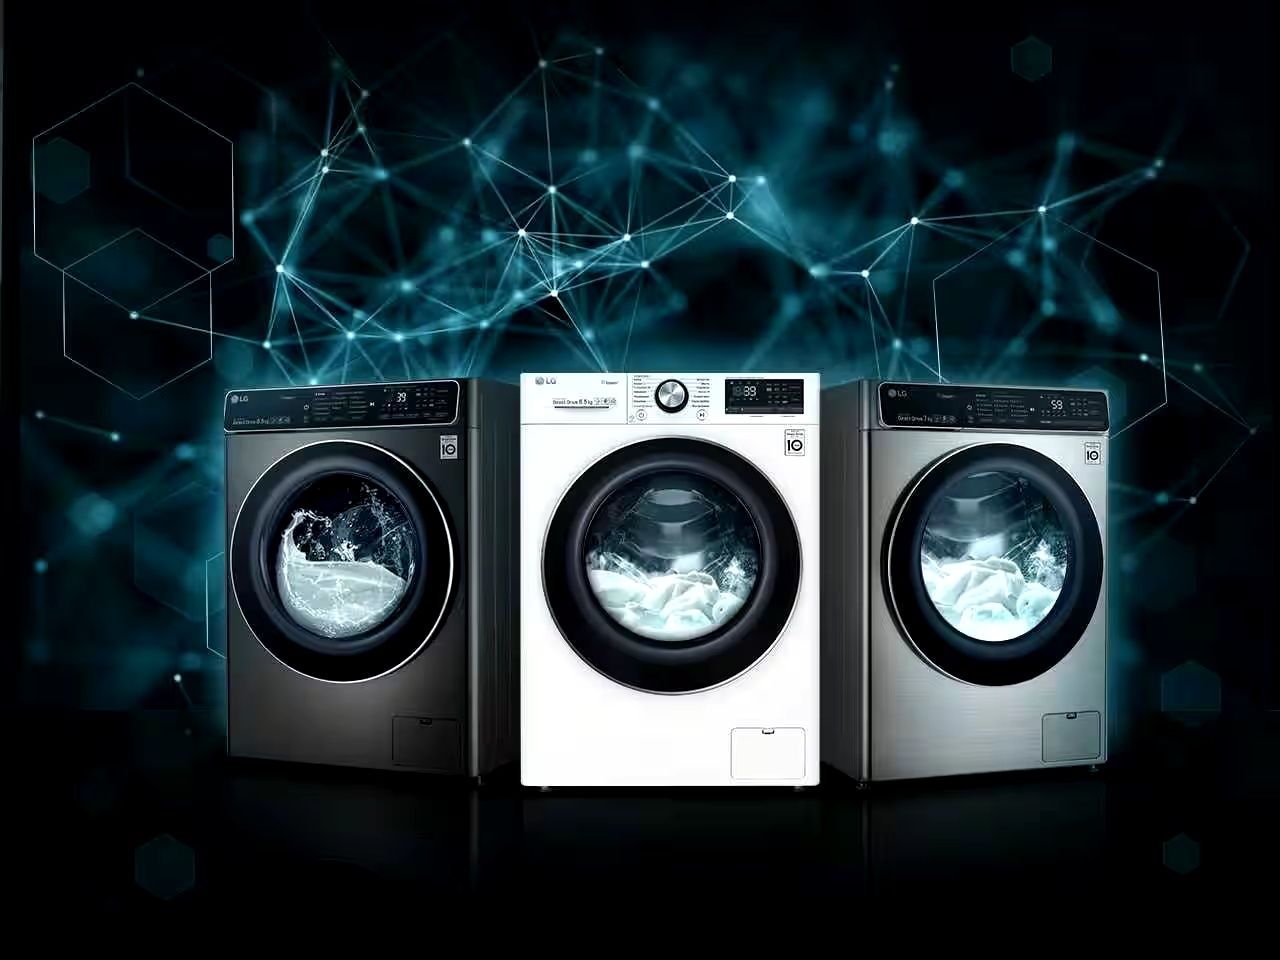 Ремонт стиральных машин гарантия качества 100%